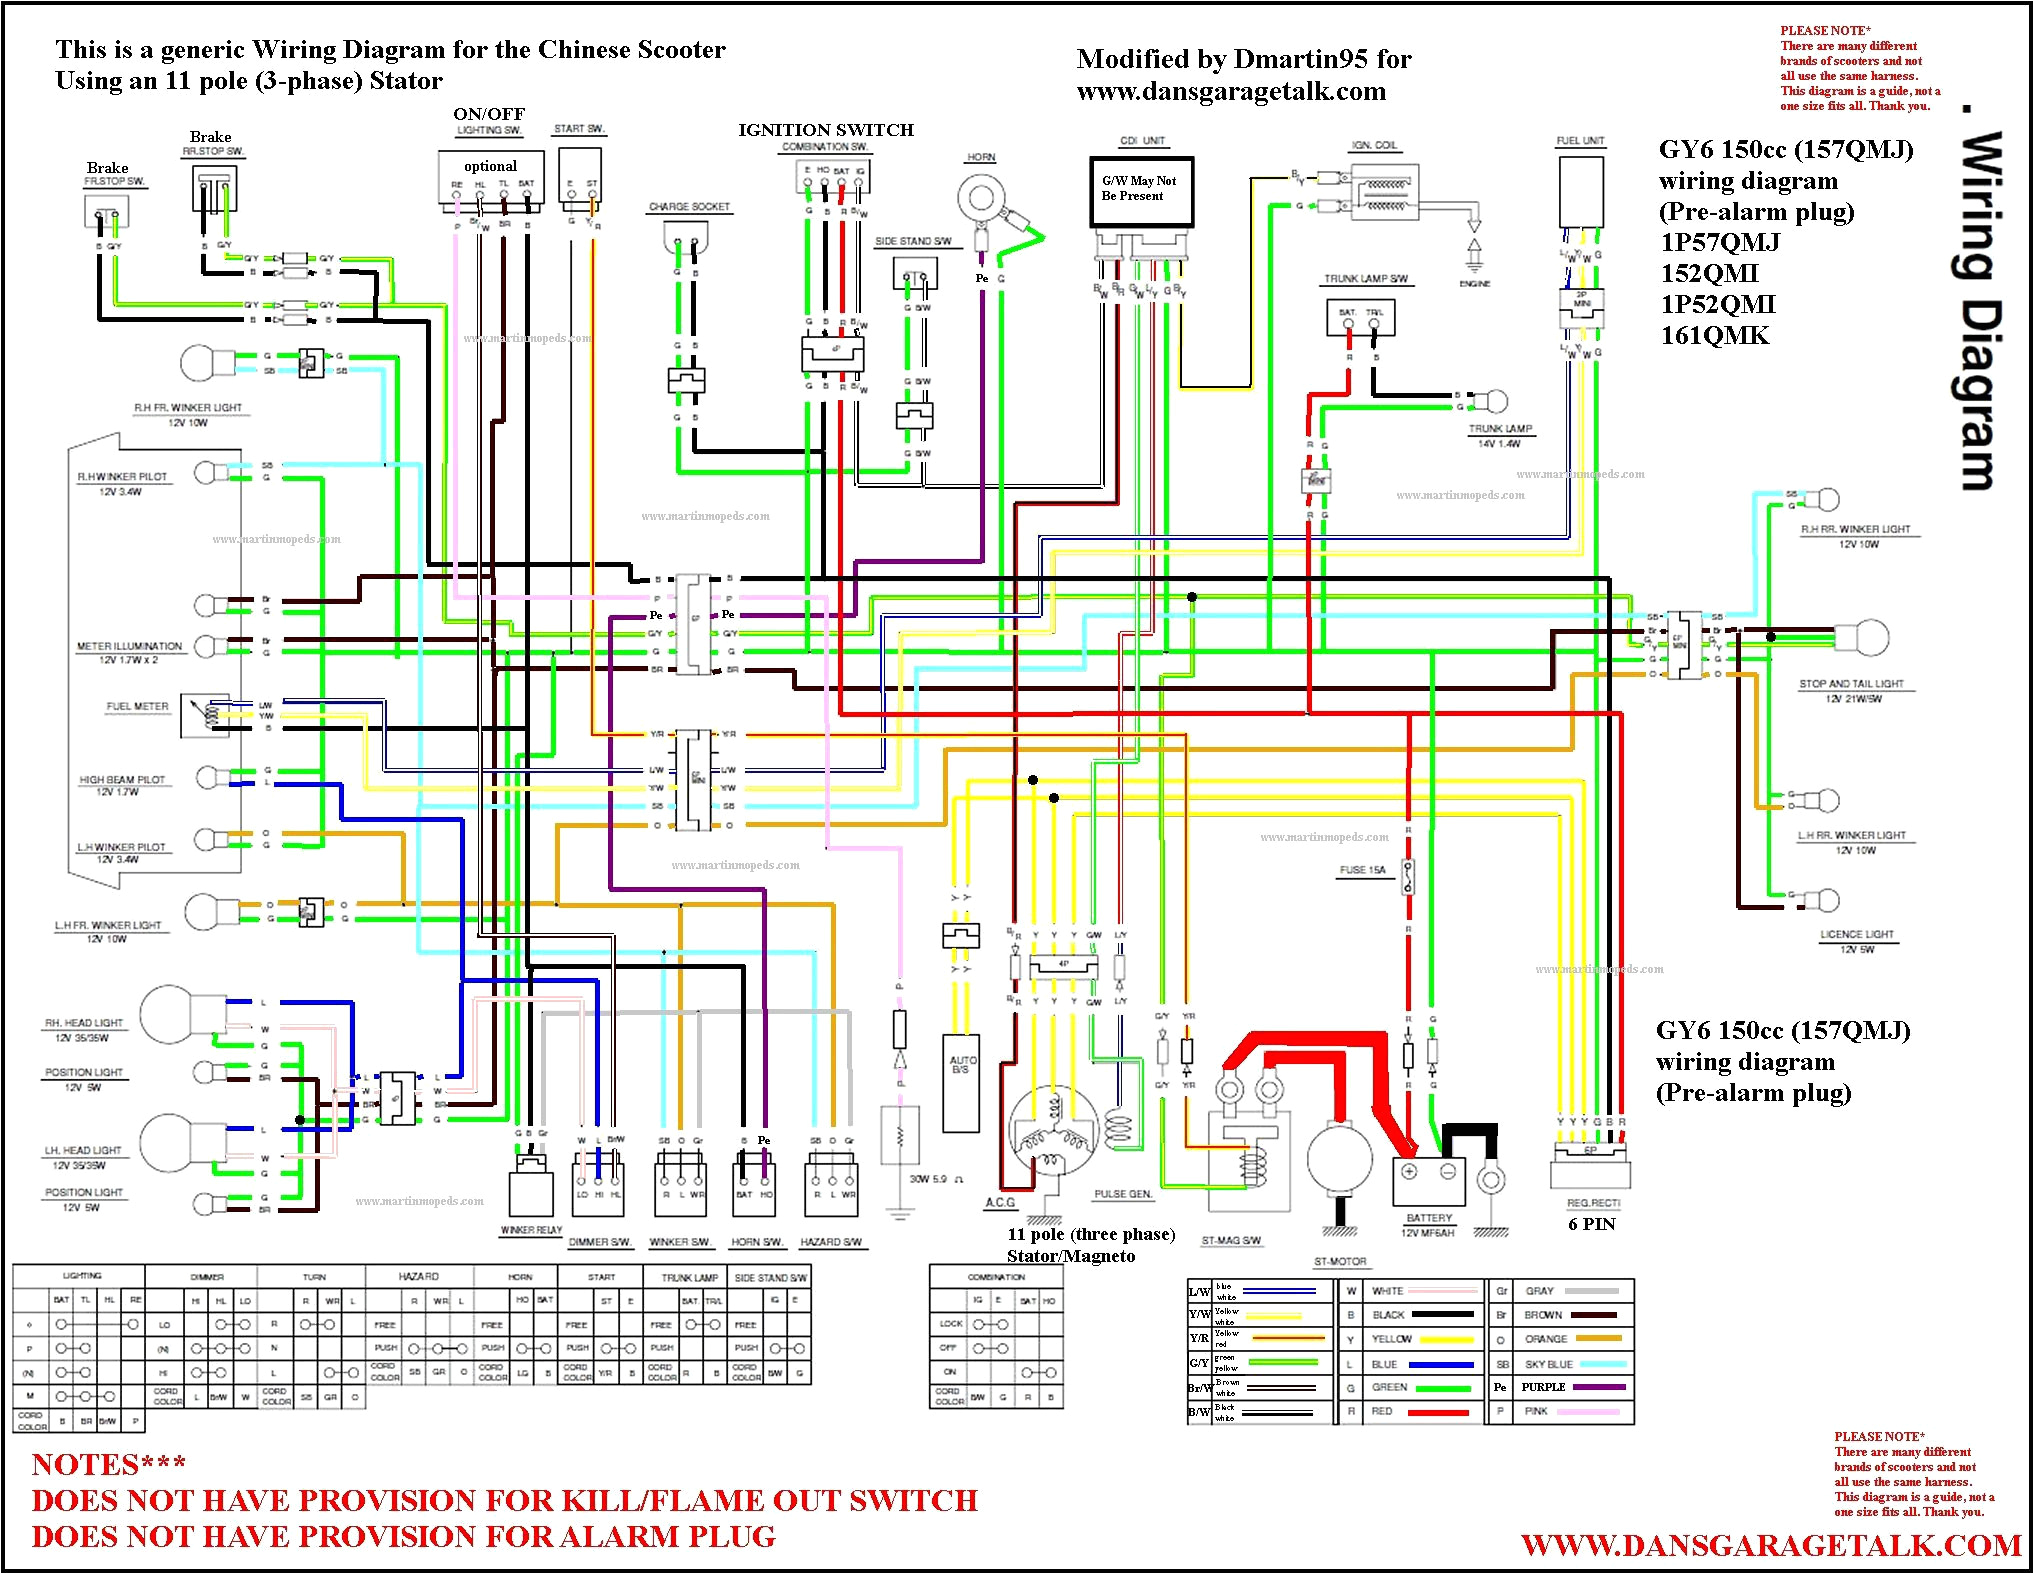 madami wiring diagram wiring diagram meta vengeance wiring diagram